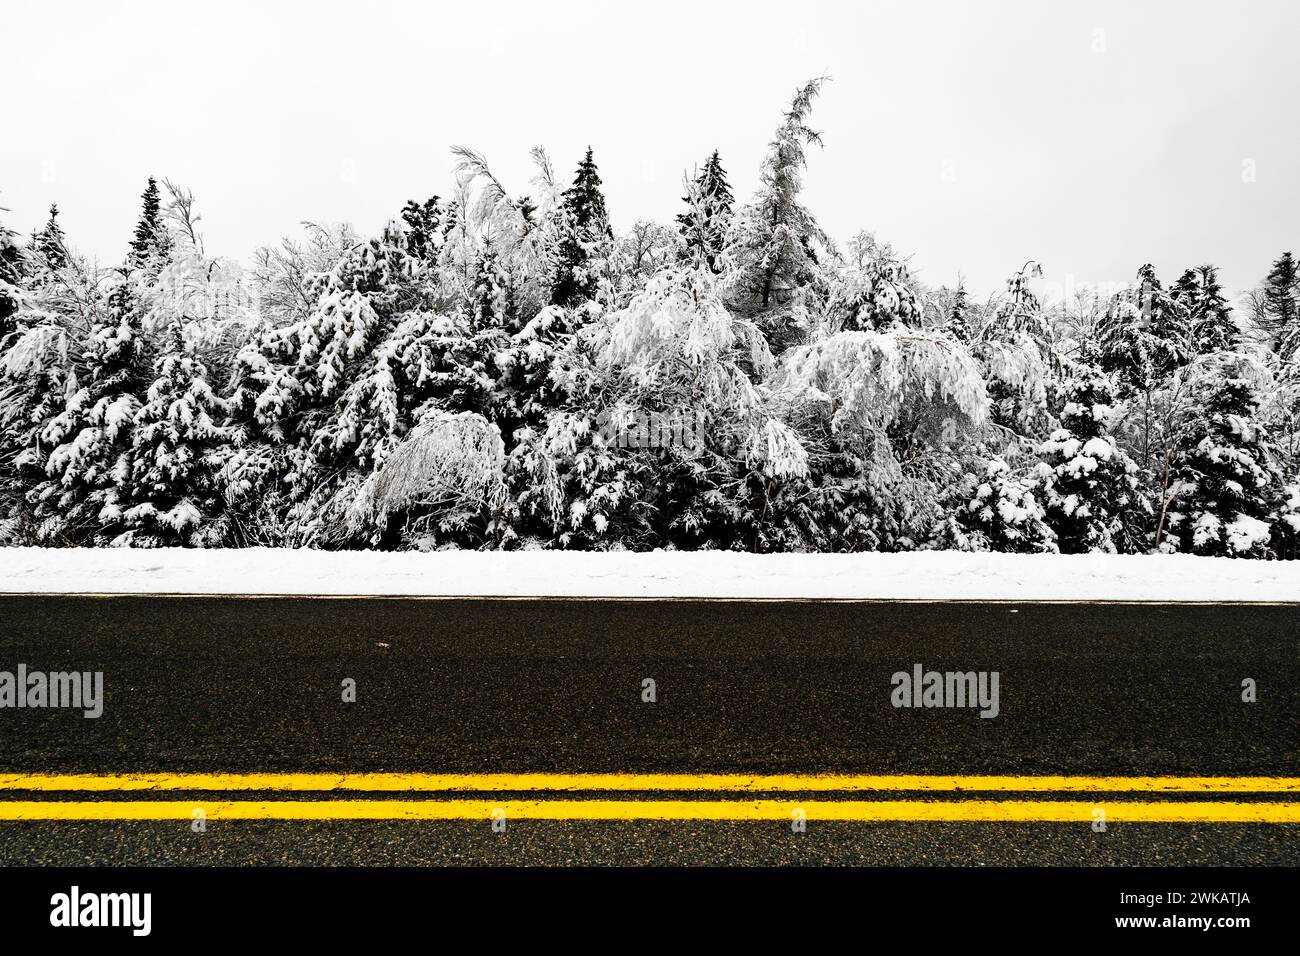 Linea centrale gialla di una strada su uno sfondo bianco e nero di alberi innevati. Foto Stock